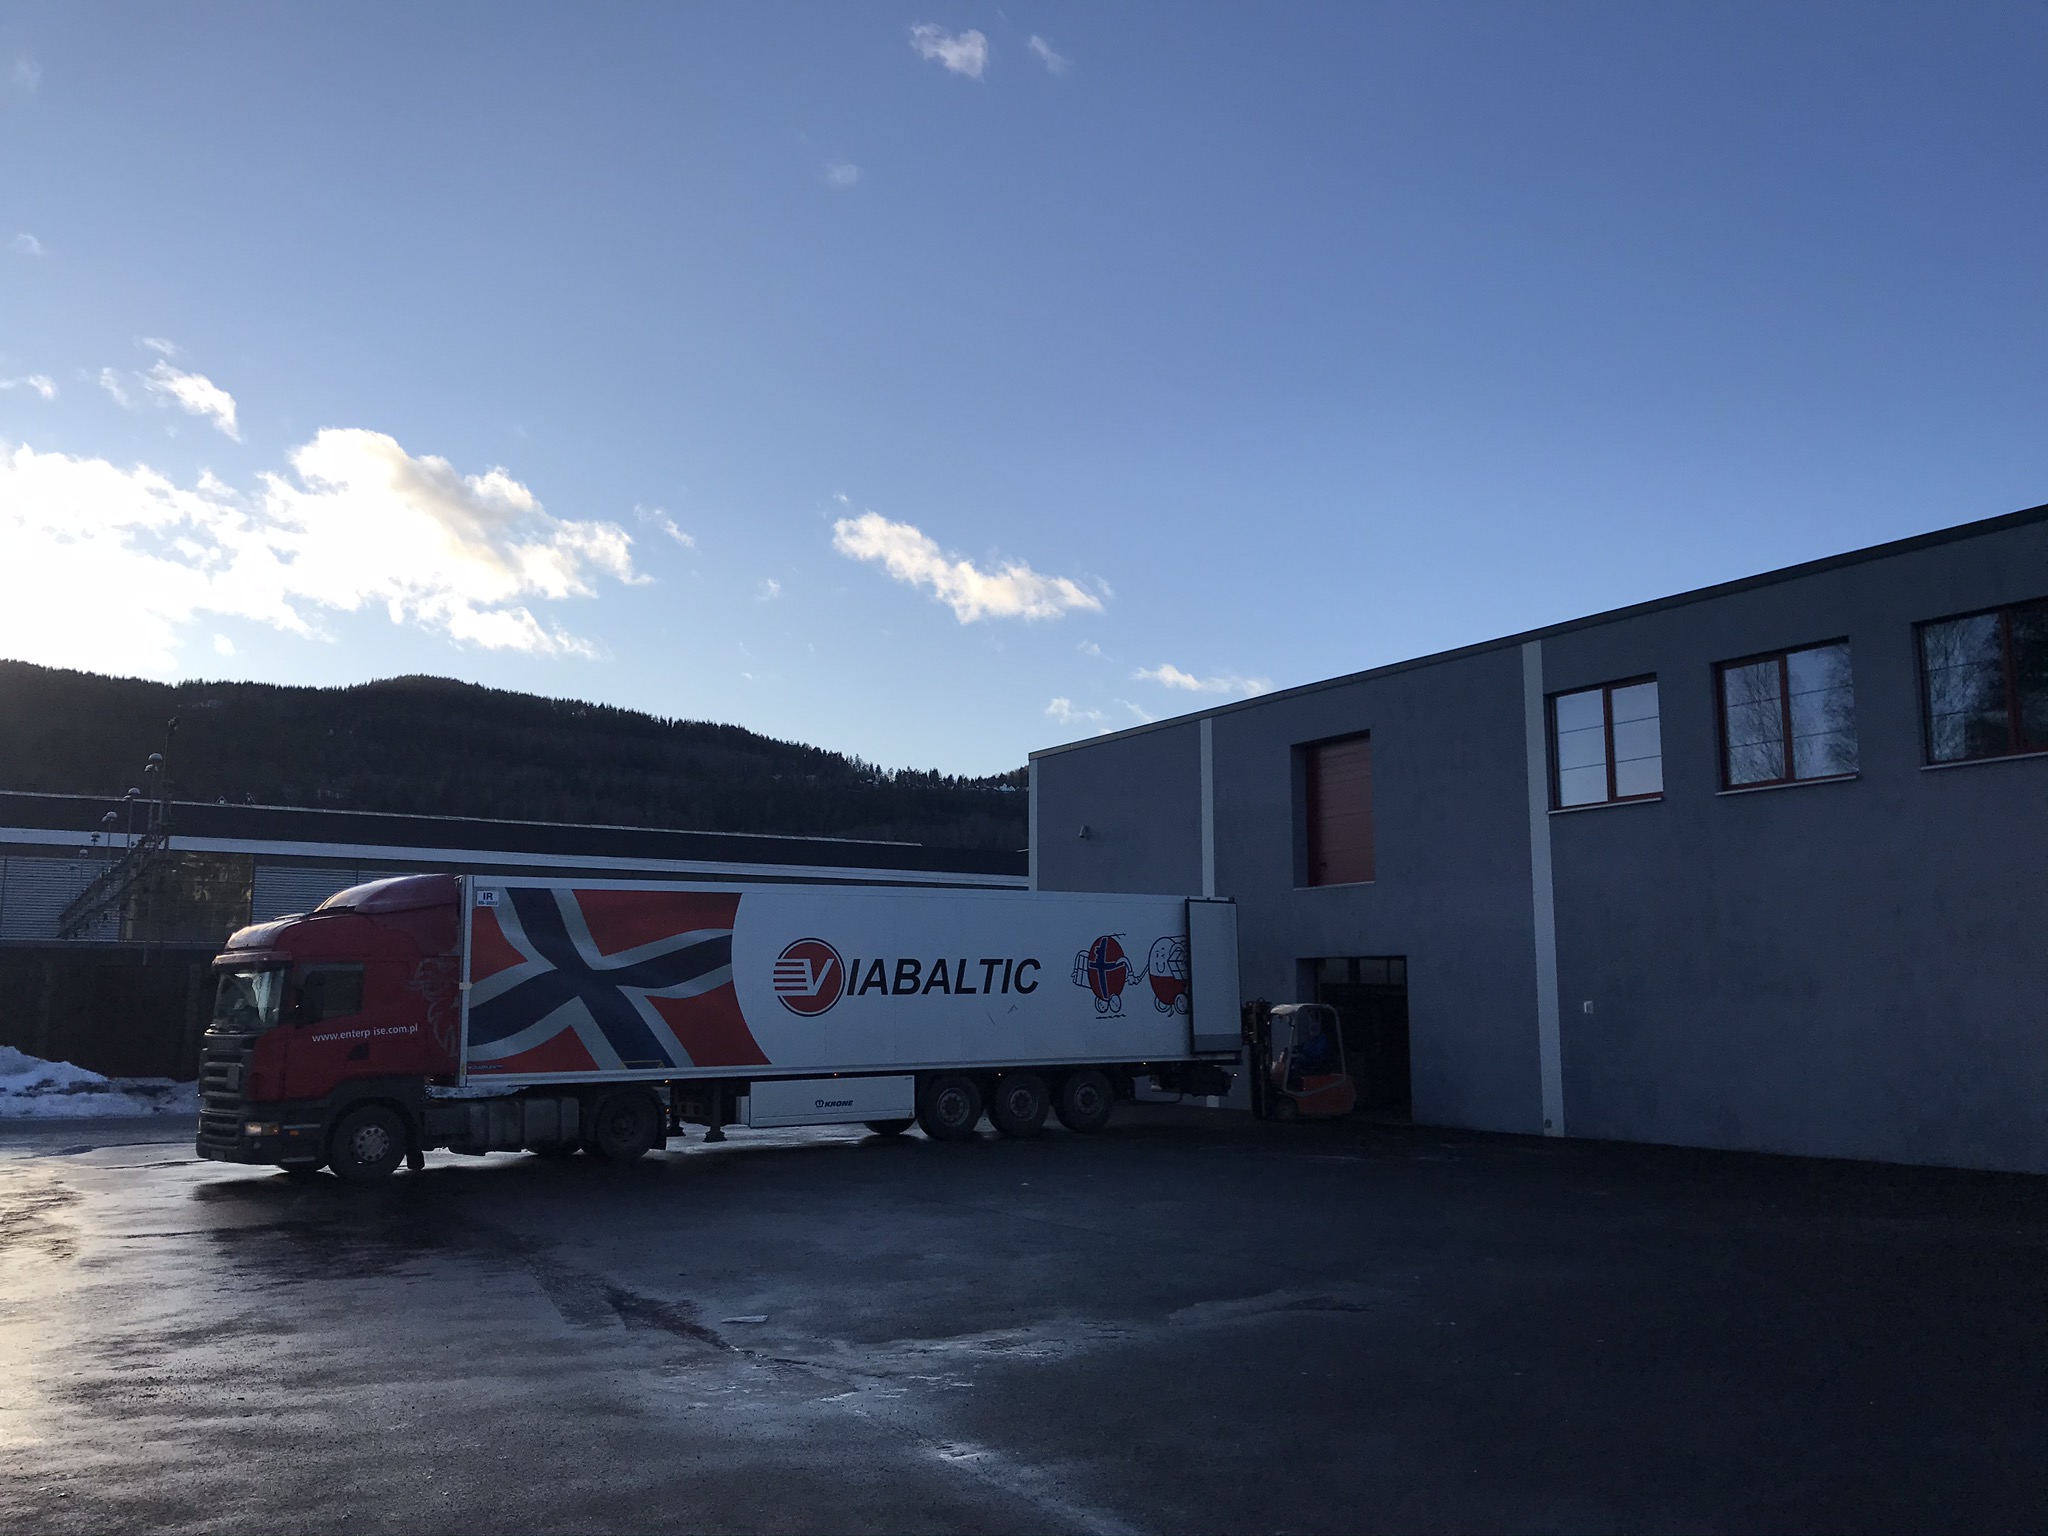 Spedisjon og Fortolling, Import og eksport av gods, Transport Norge Polen-Viabaltic Norge